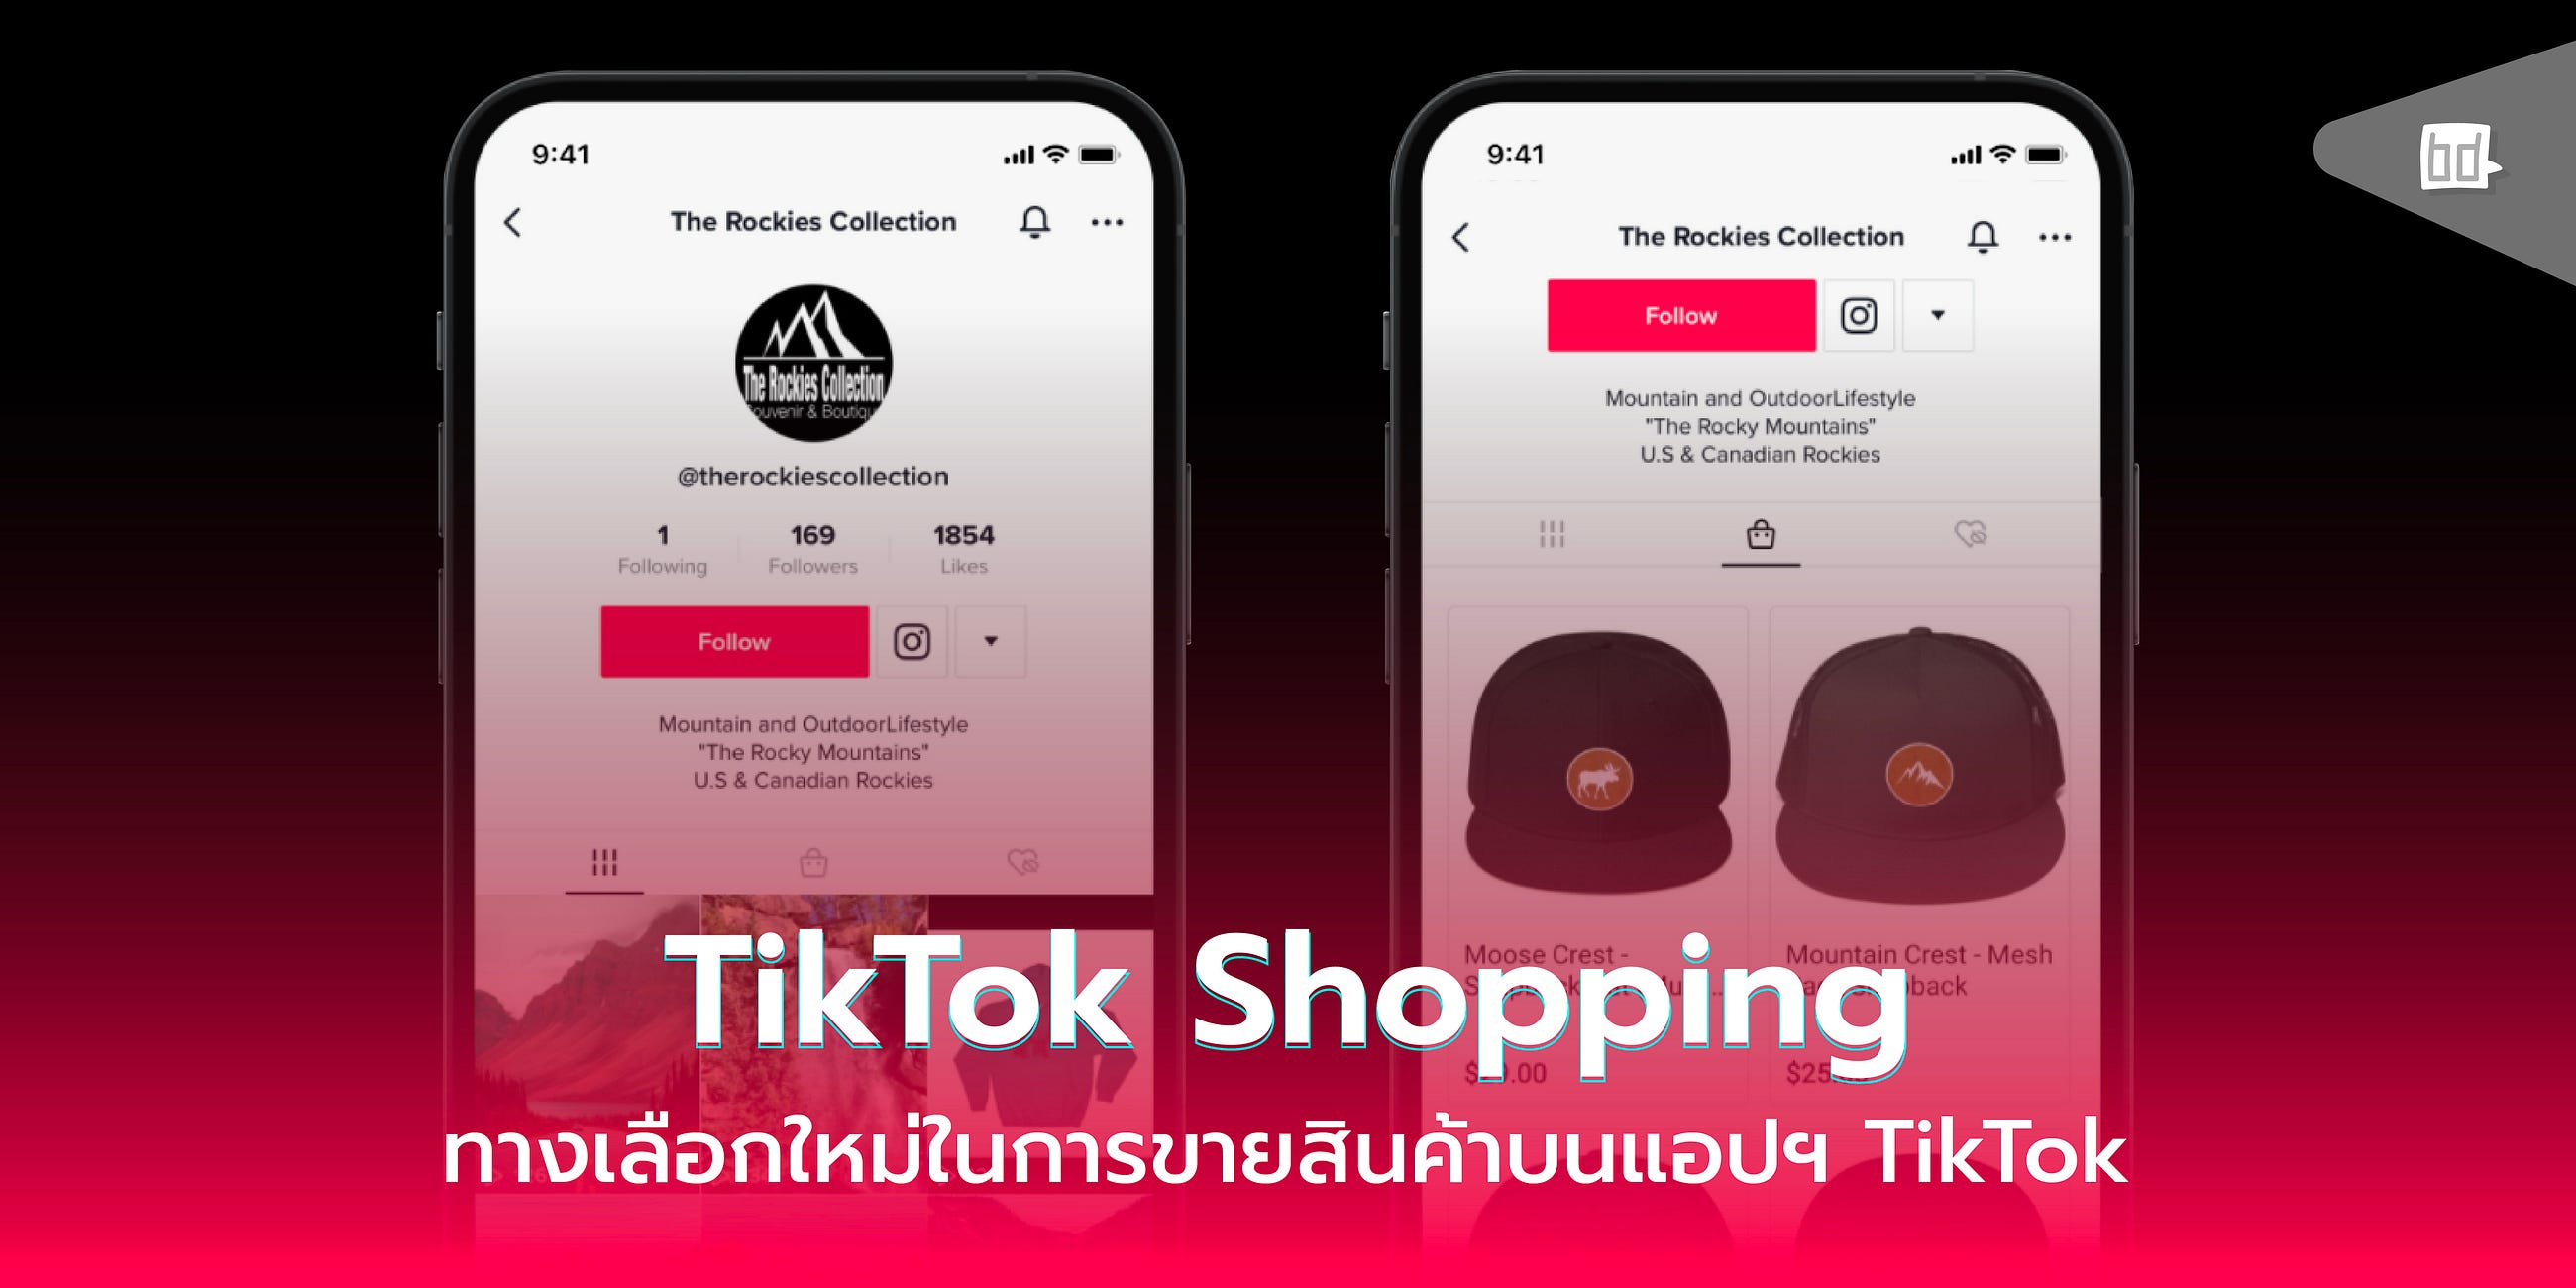 TikTok Shopping ทางเลือกใหม่ในการขายสินค้าบนแอปฯ TikTok